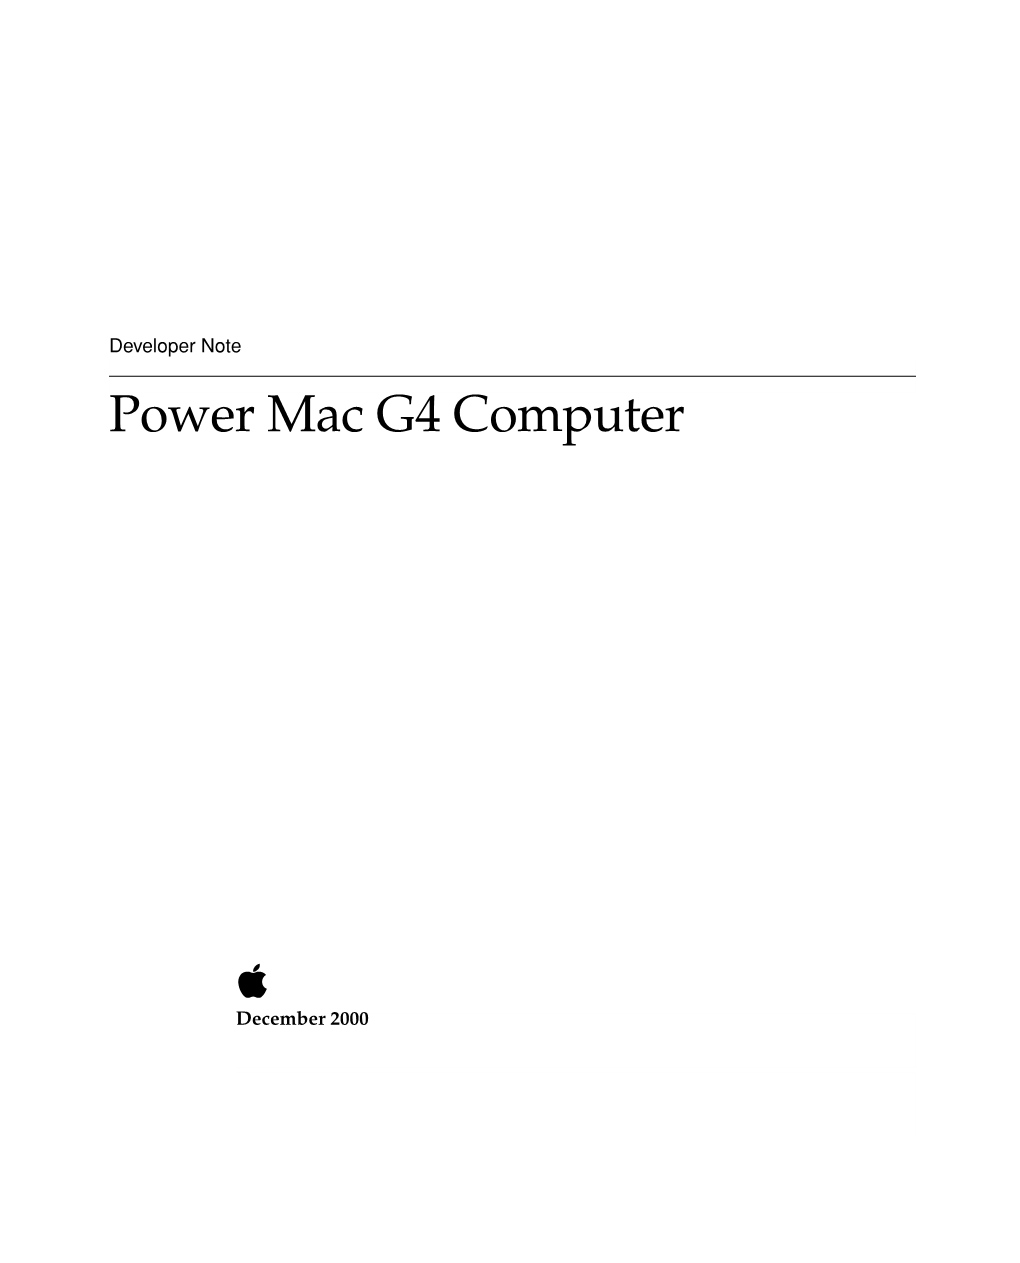 Power Mac G4 Computer